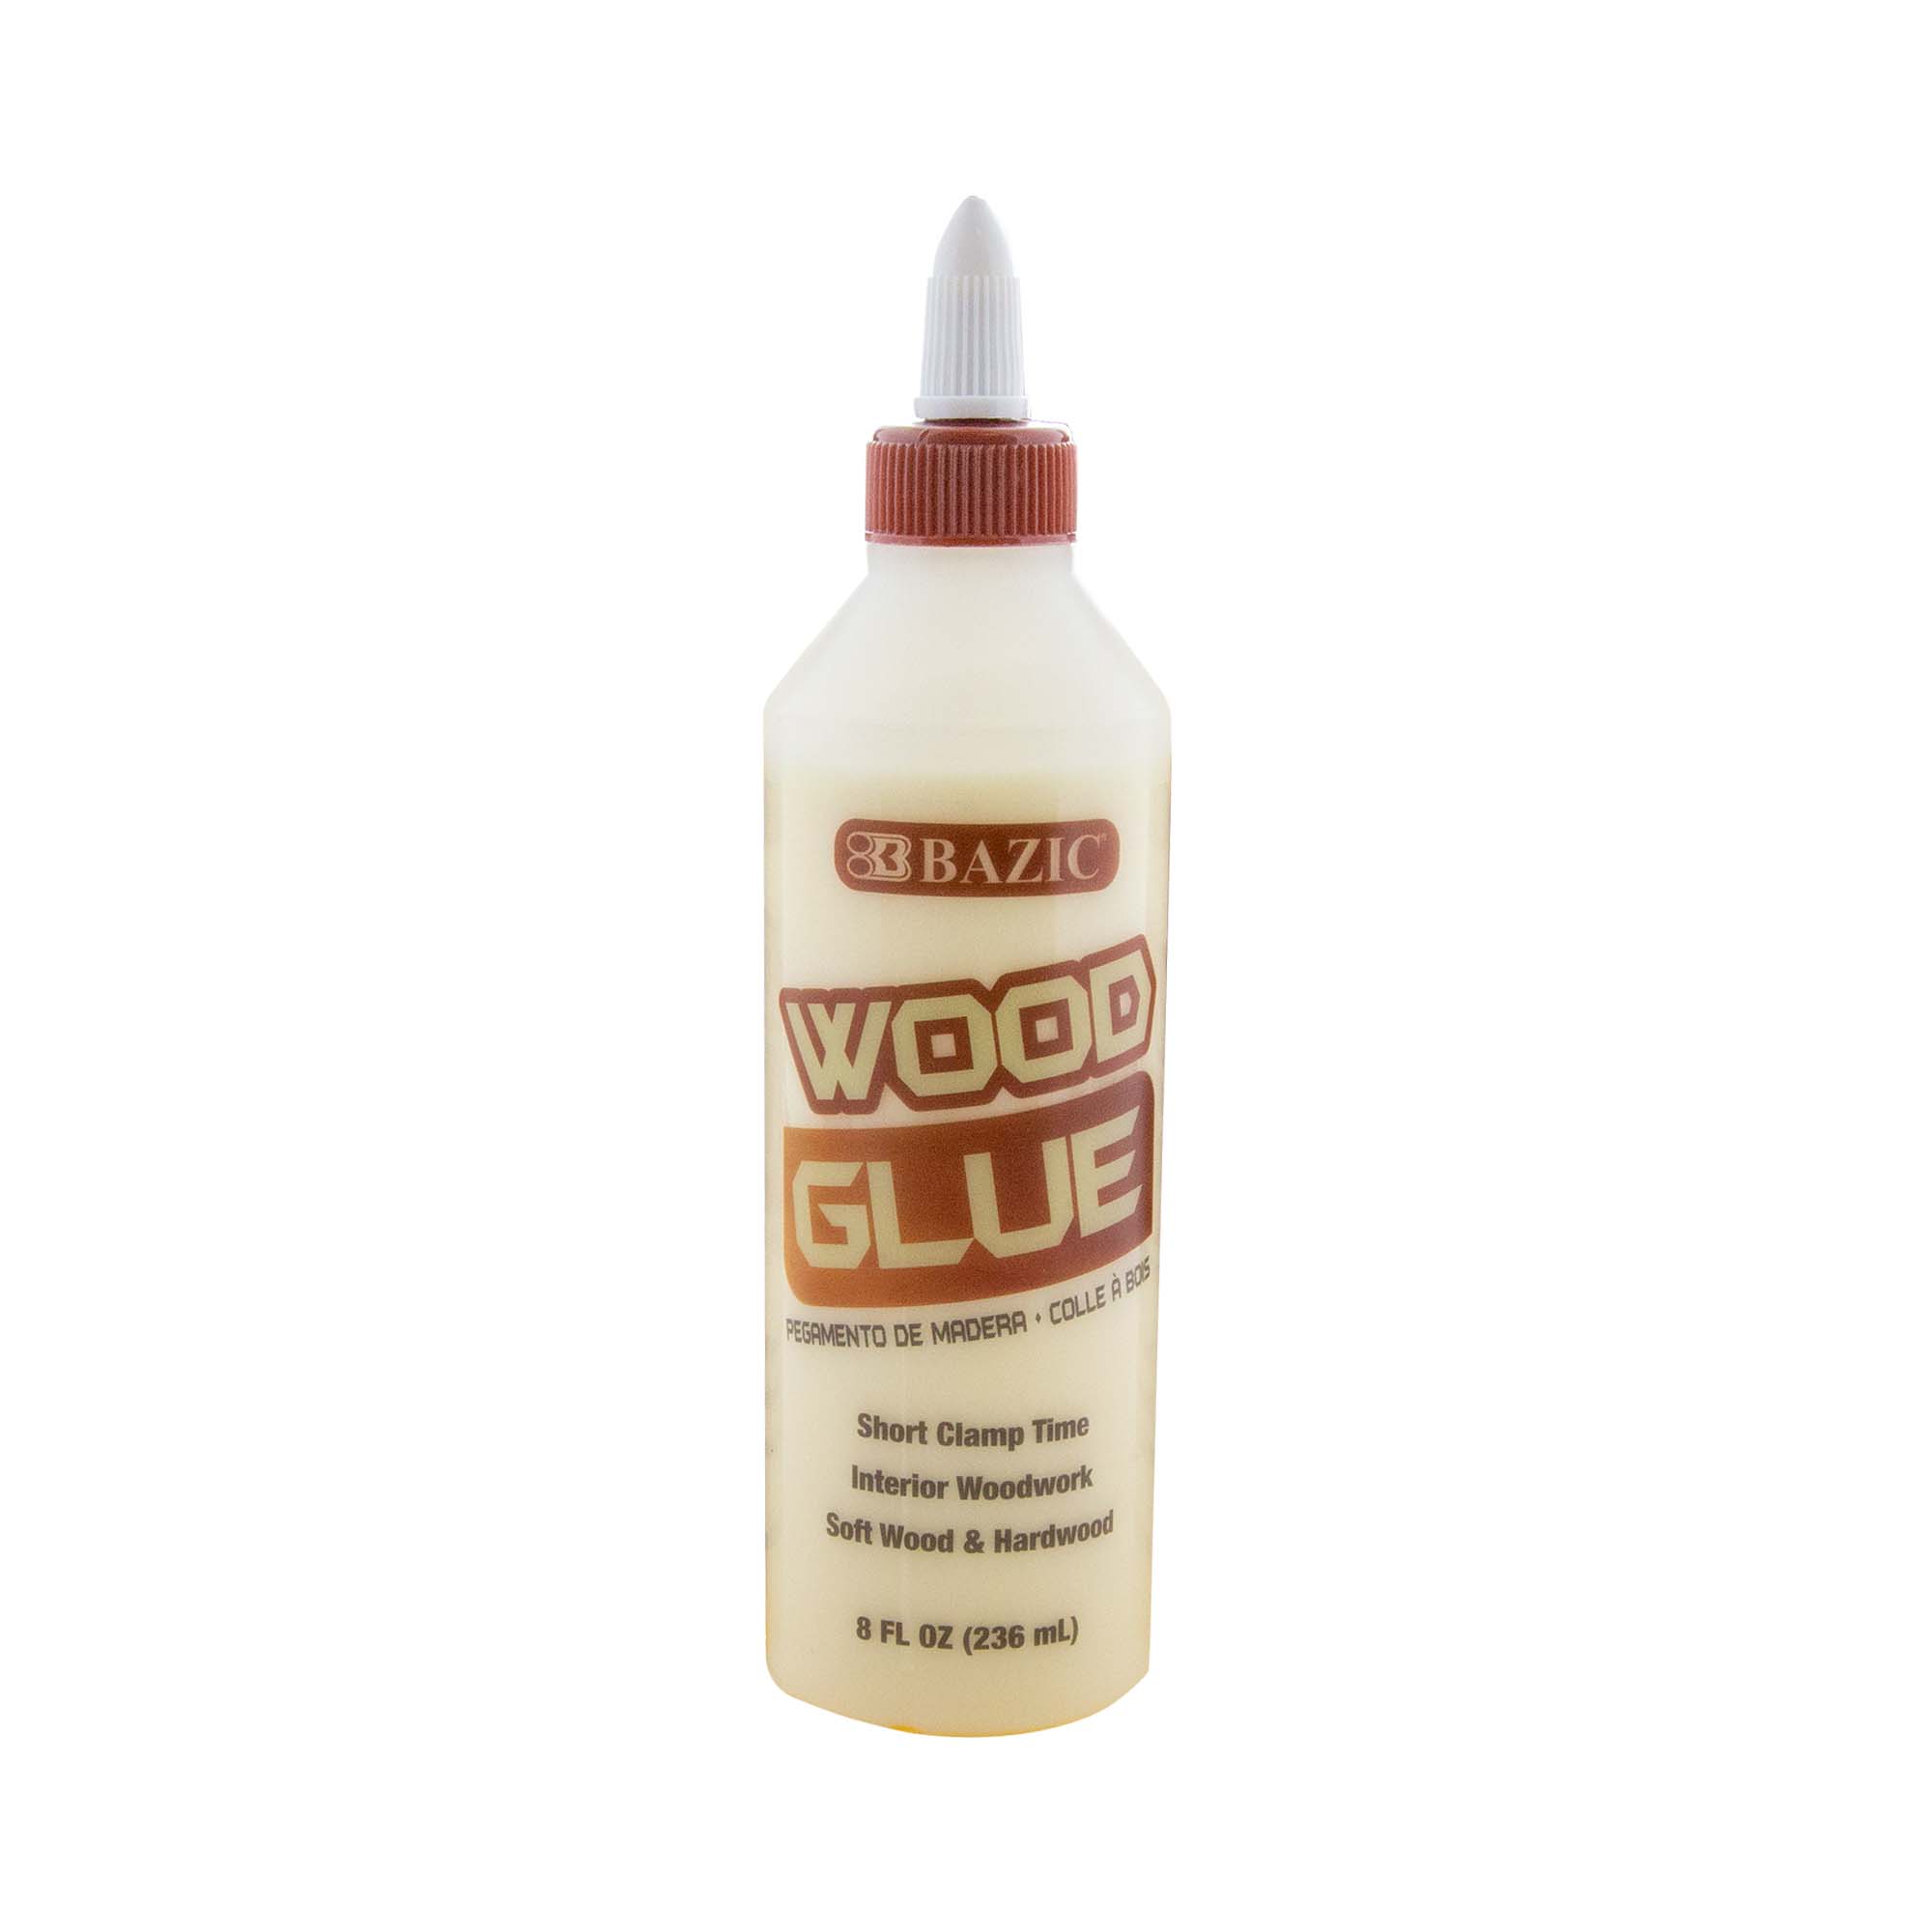 Bazic 8 fl oz (225 ml) Wood Glue